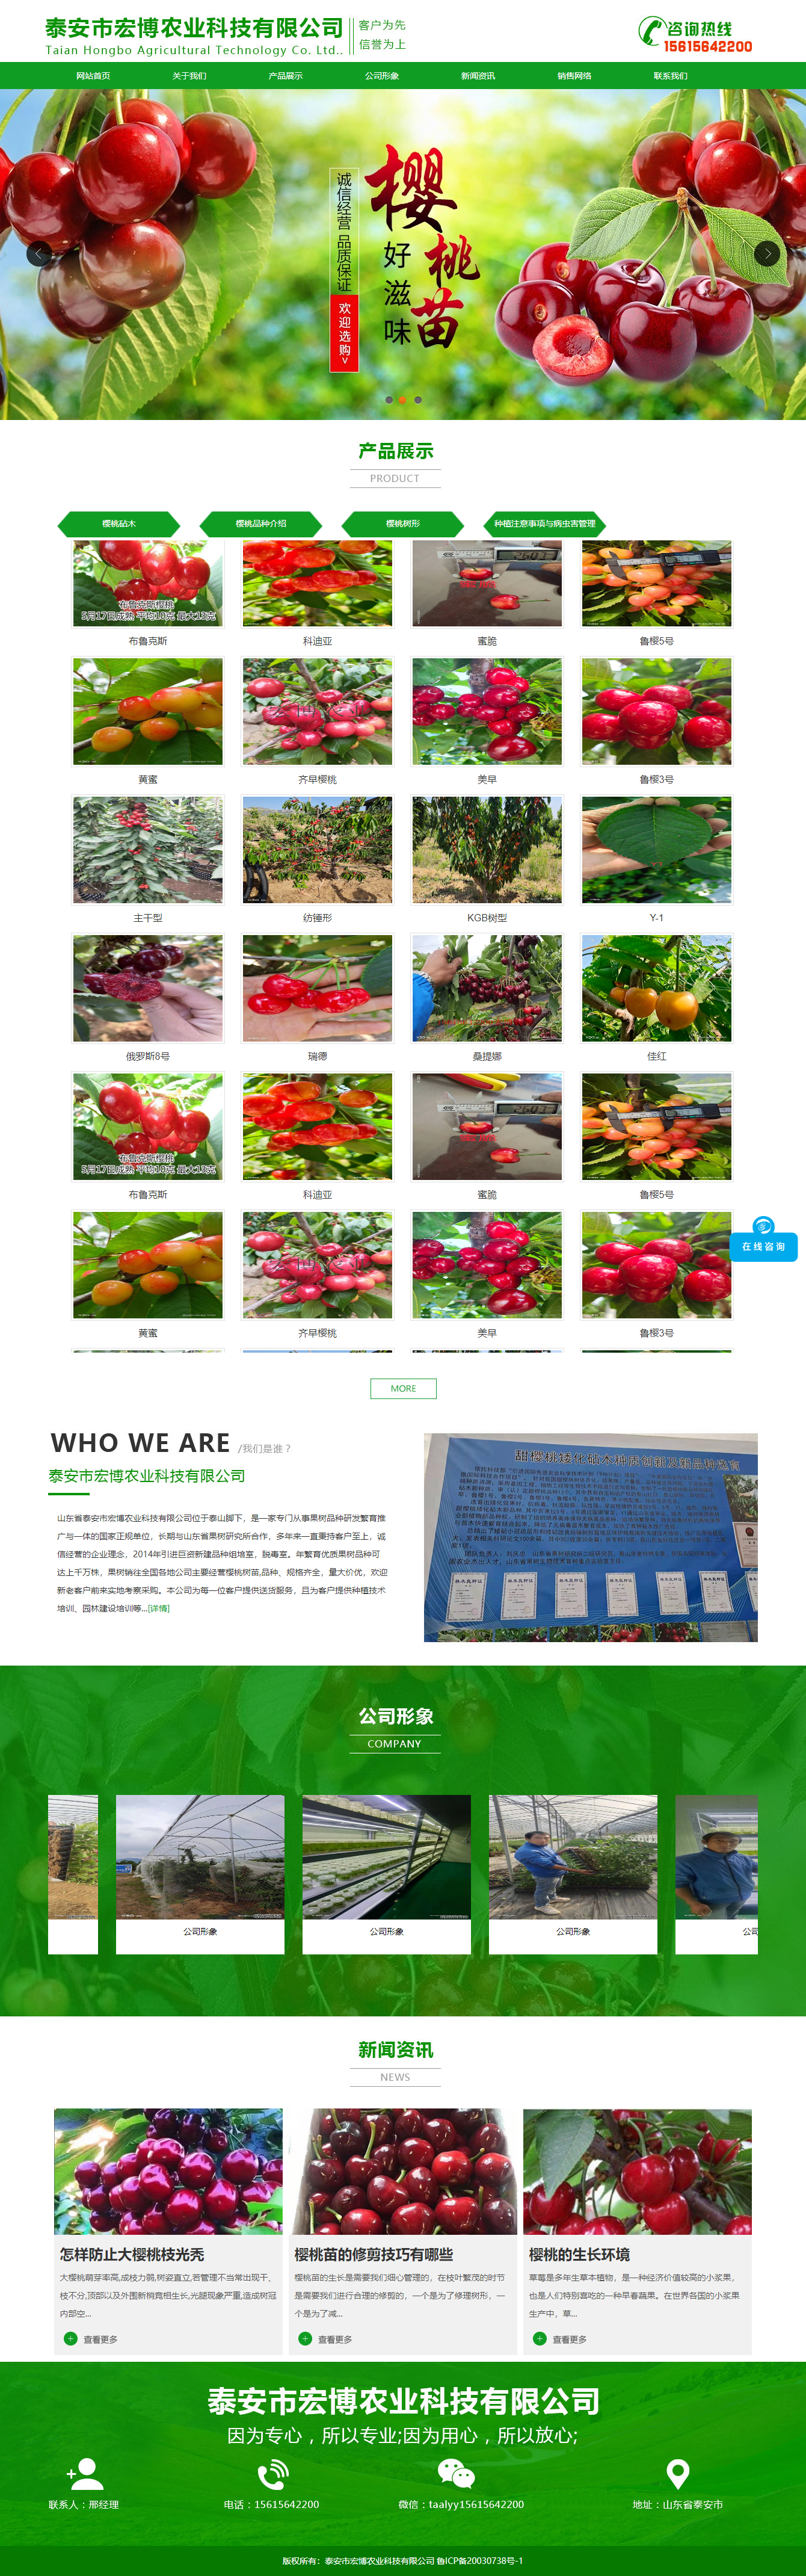 泰安市宏博农业科技有限公司网站案例